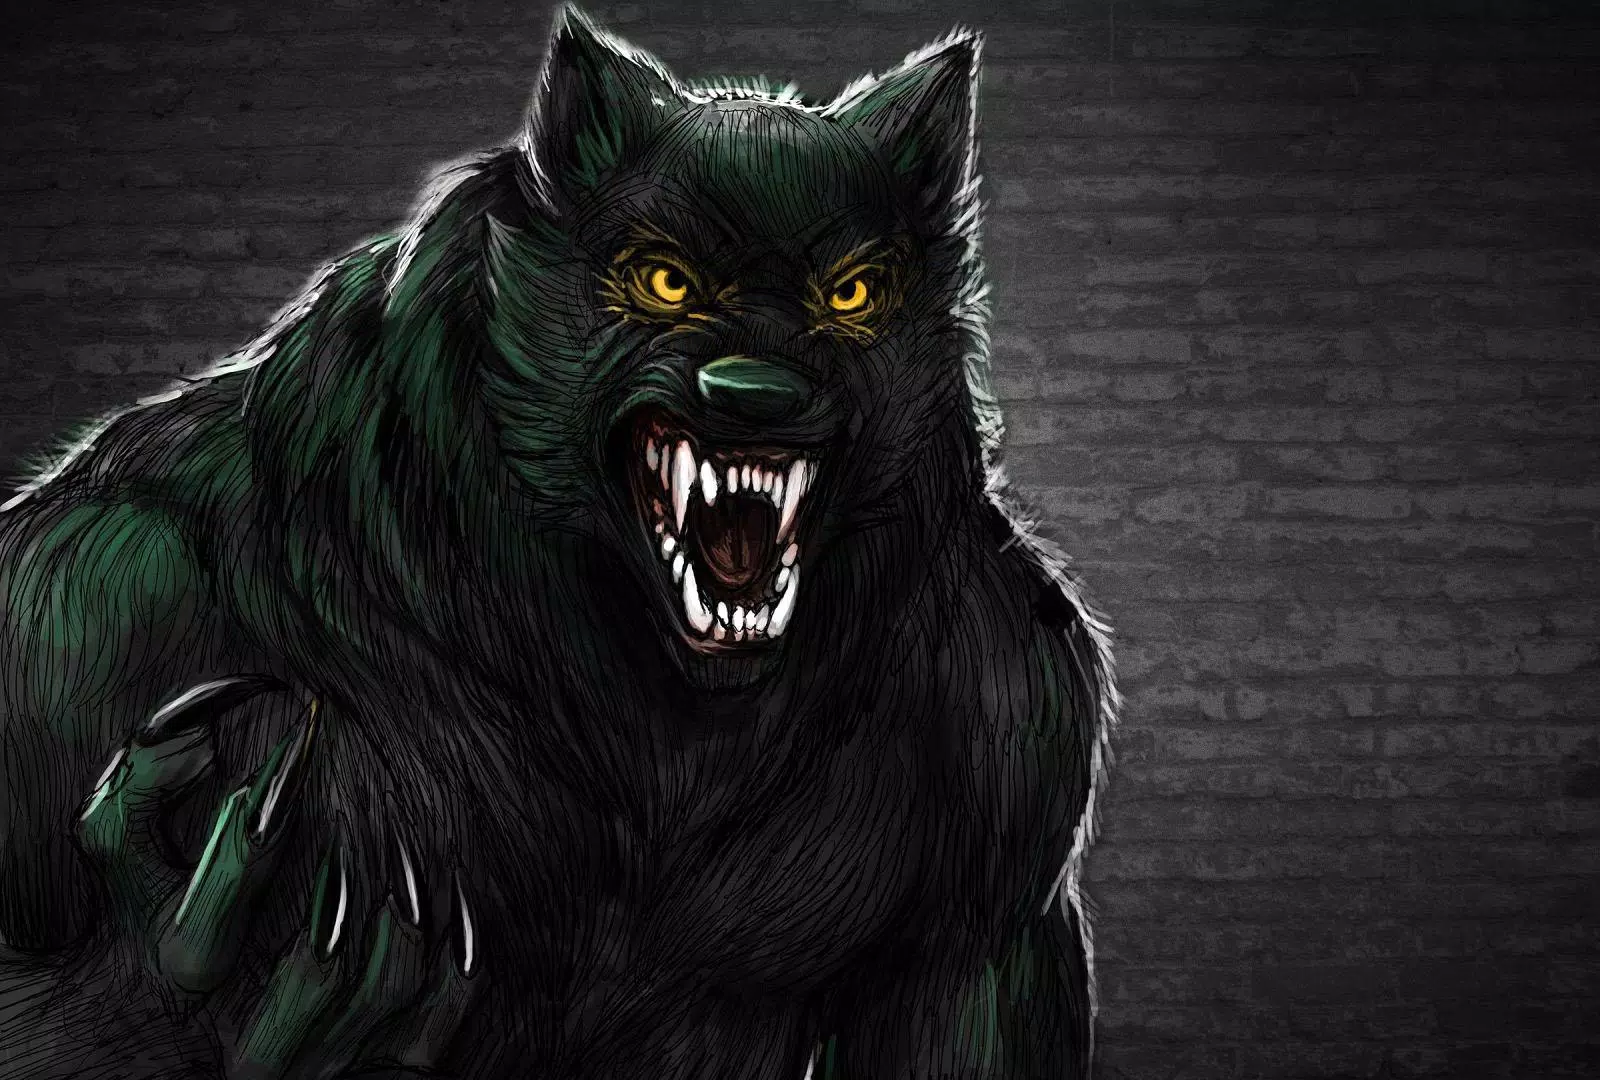 Download do apk de werewolf wallpaper k ultra hd para android